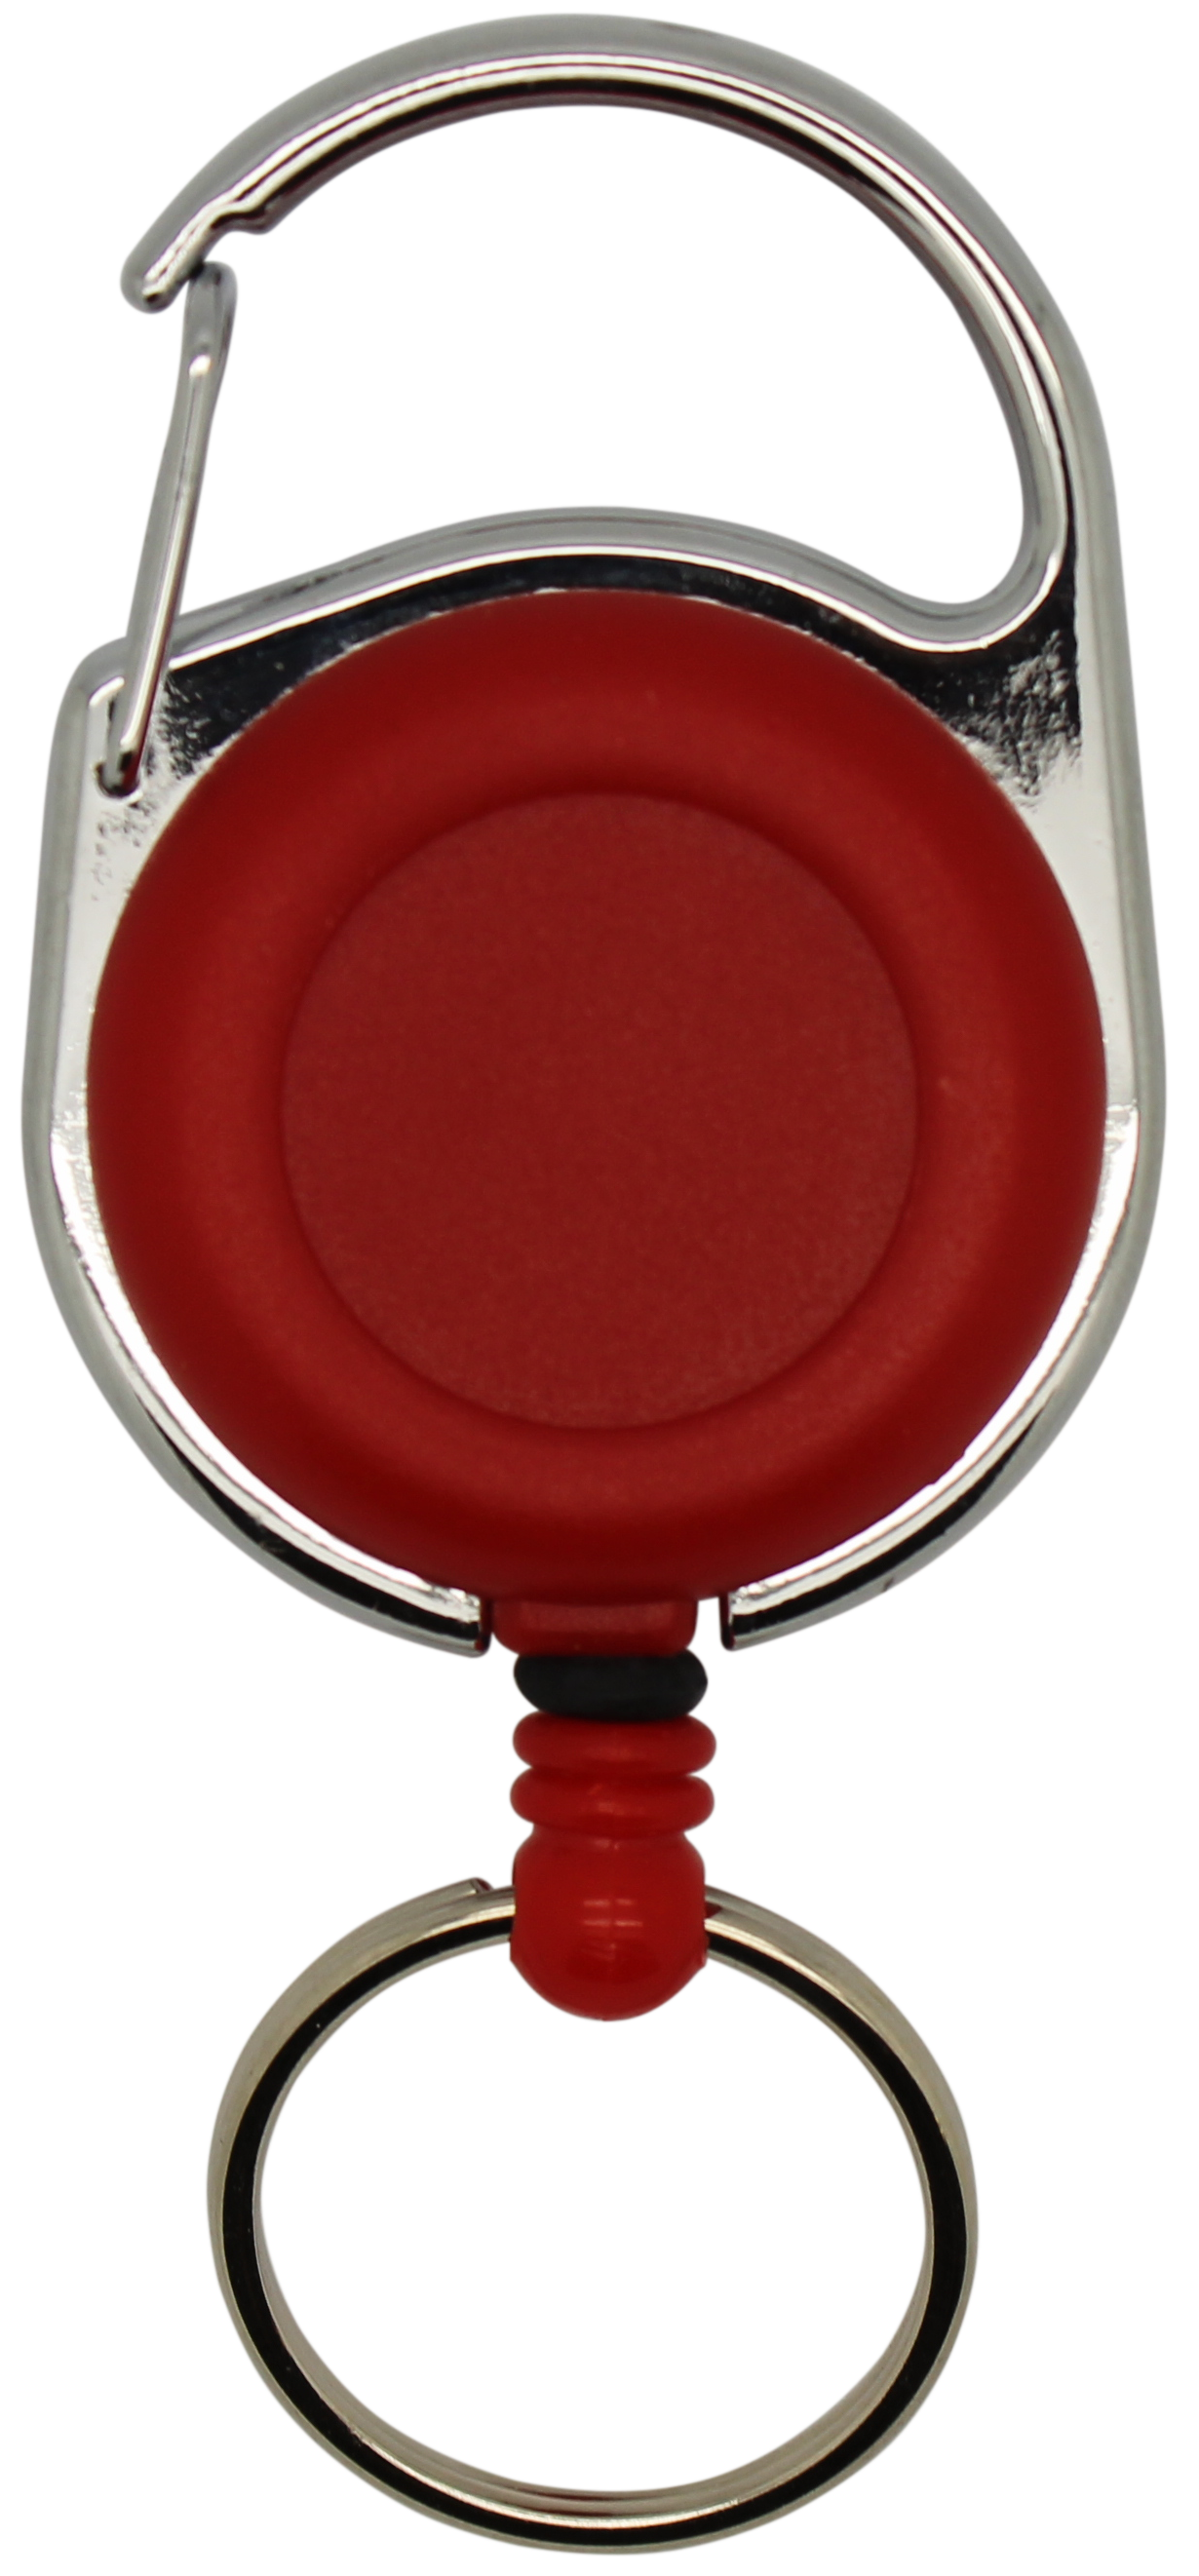 Jojo rund, vollfarbig rot, Karabinerhaken, Schlüsselring, Nylonschnur 60 cm 